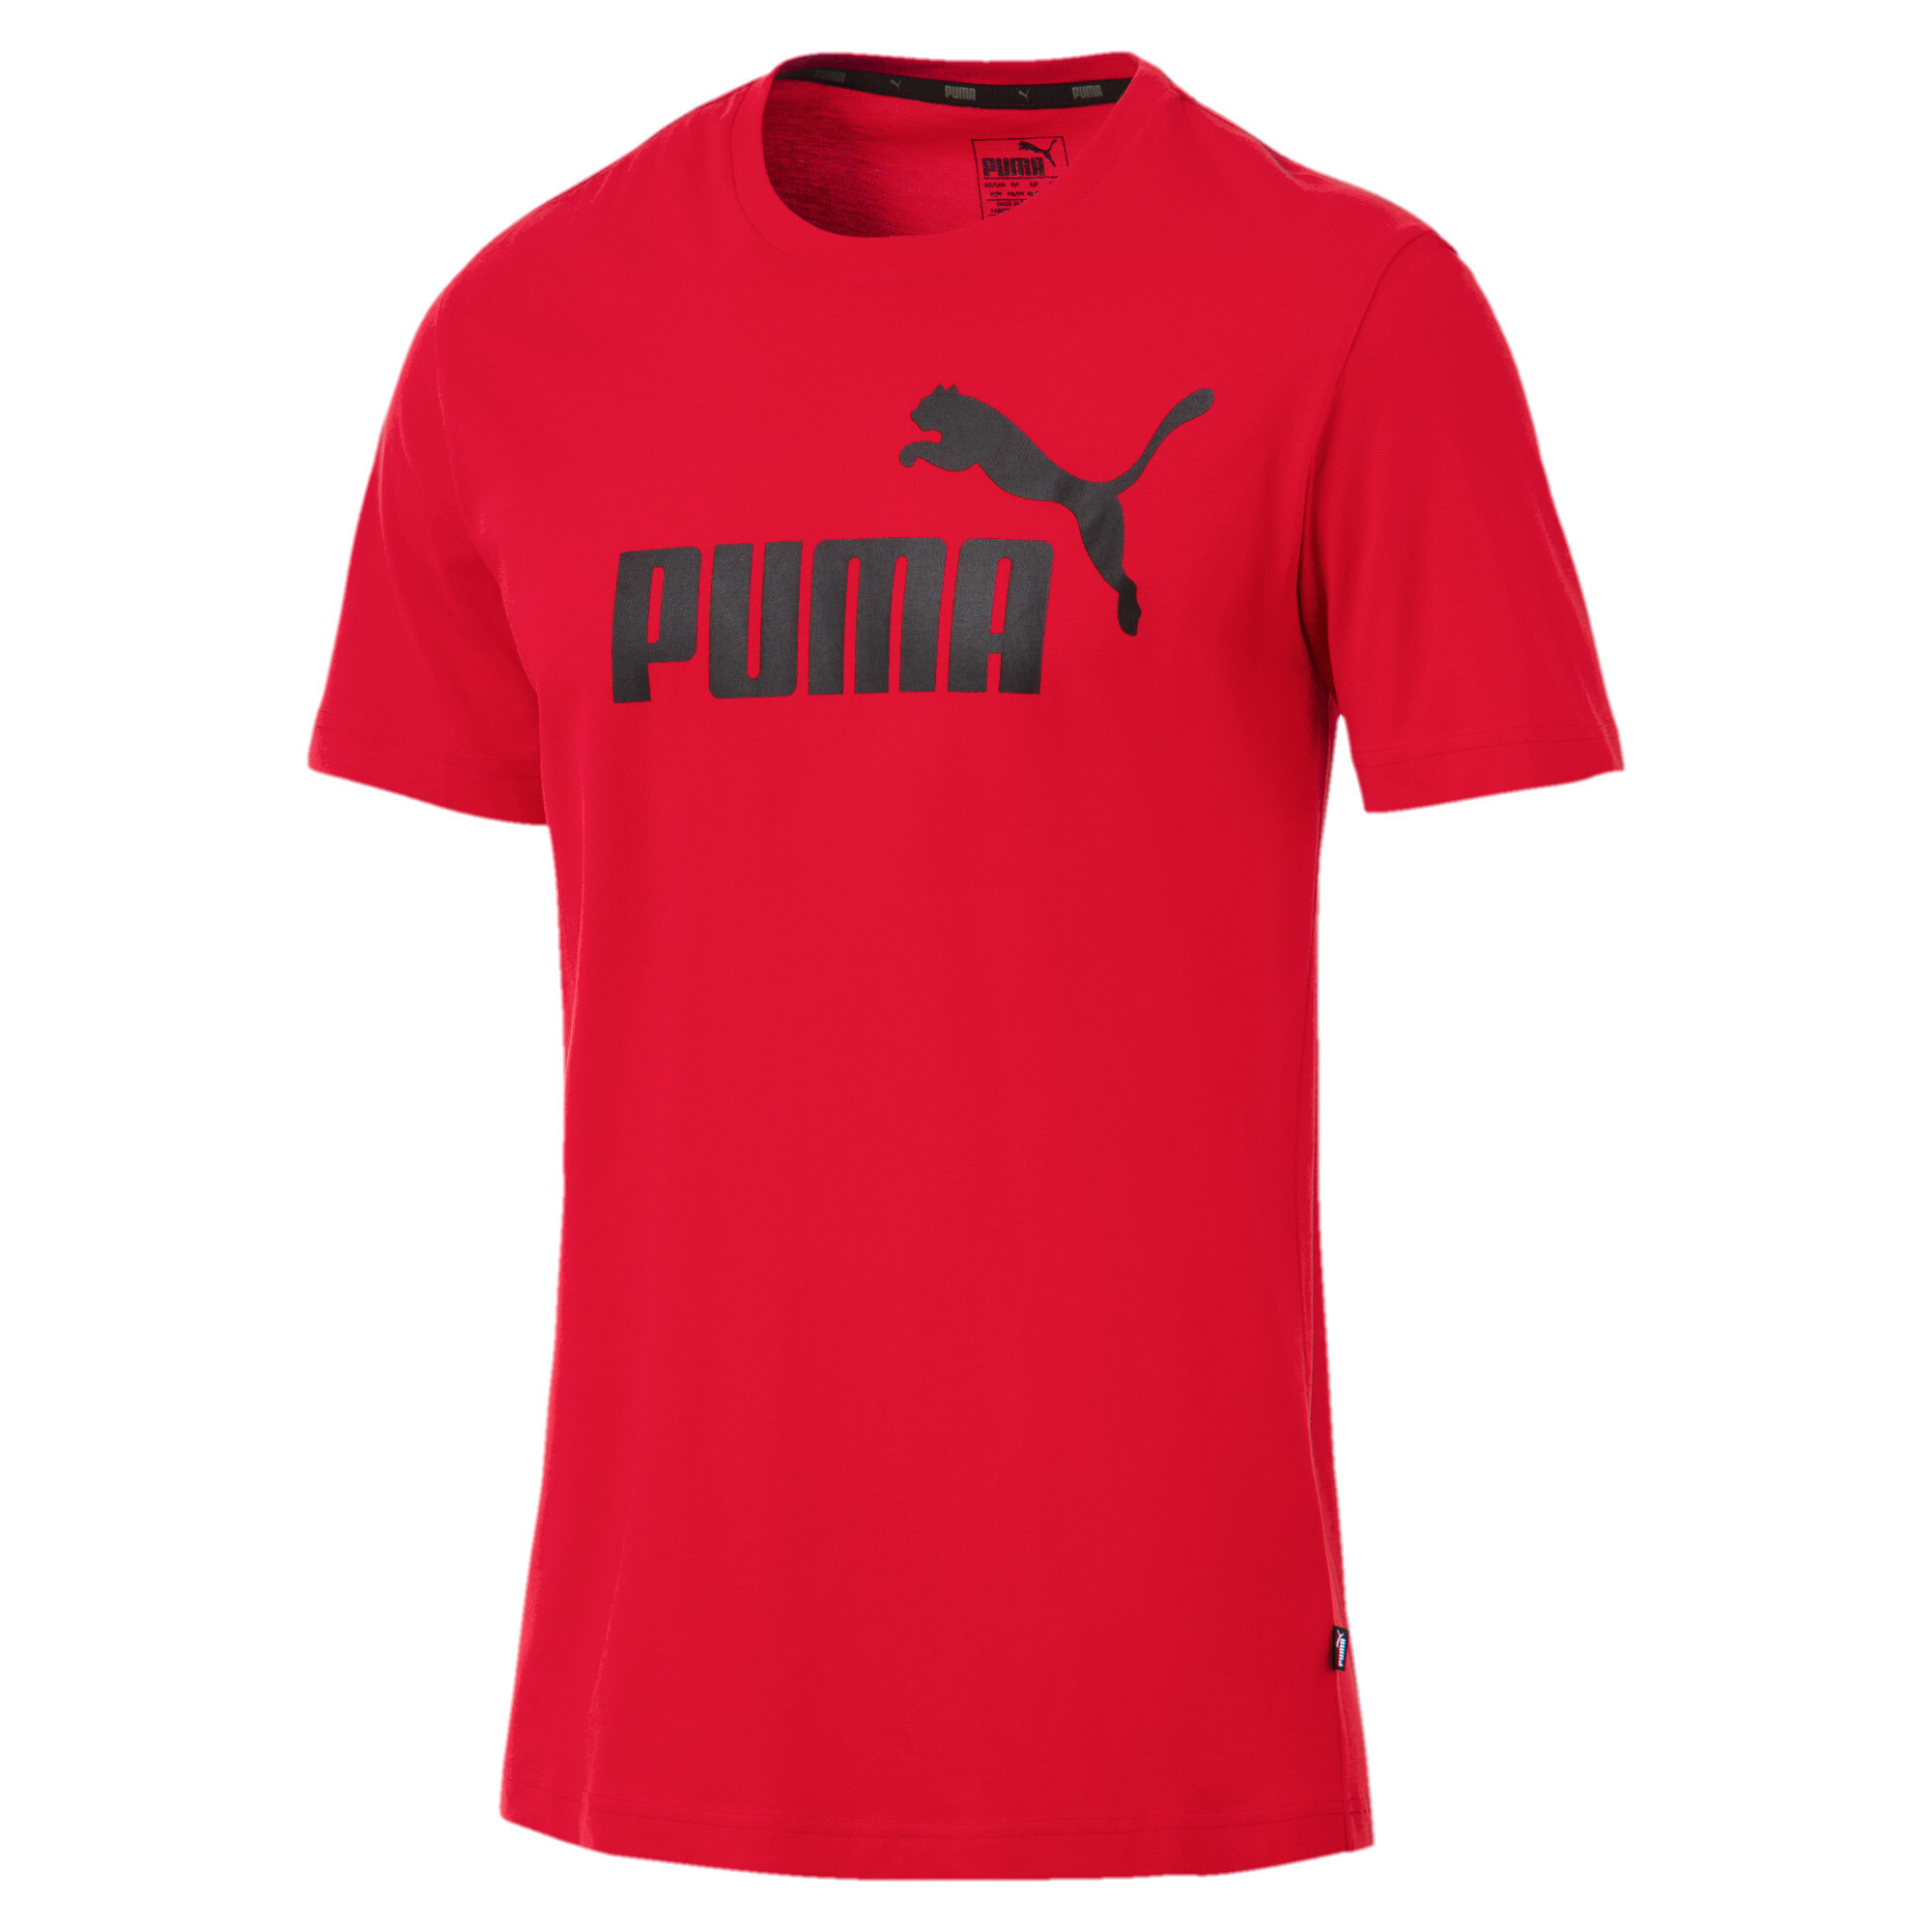 Puma Red